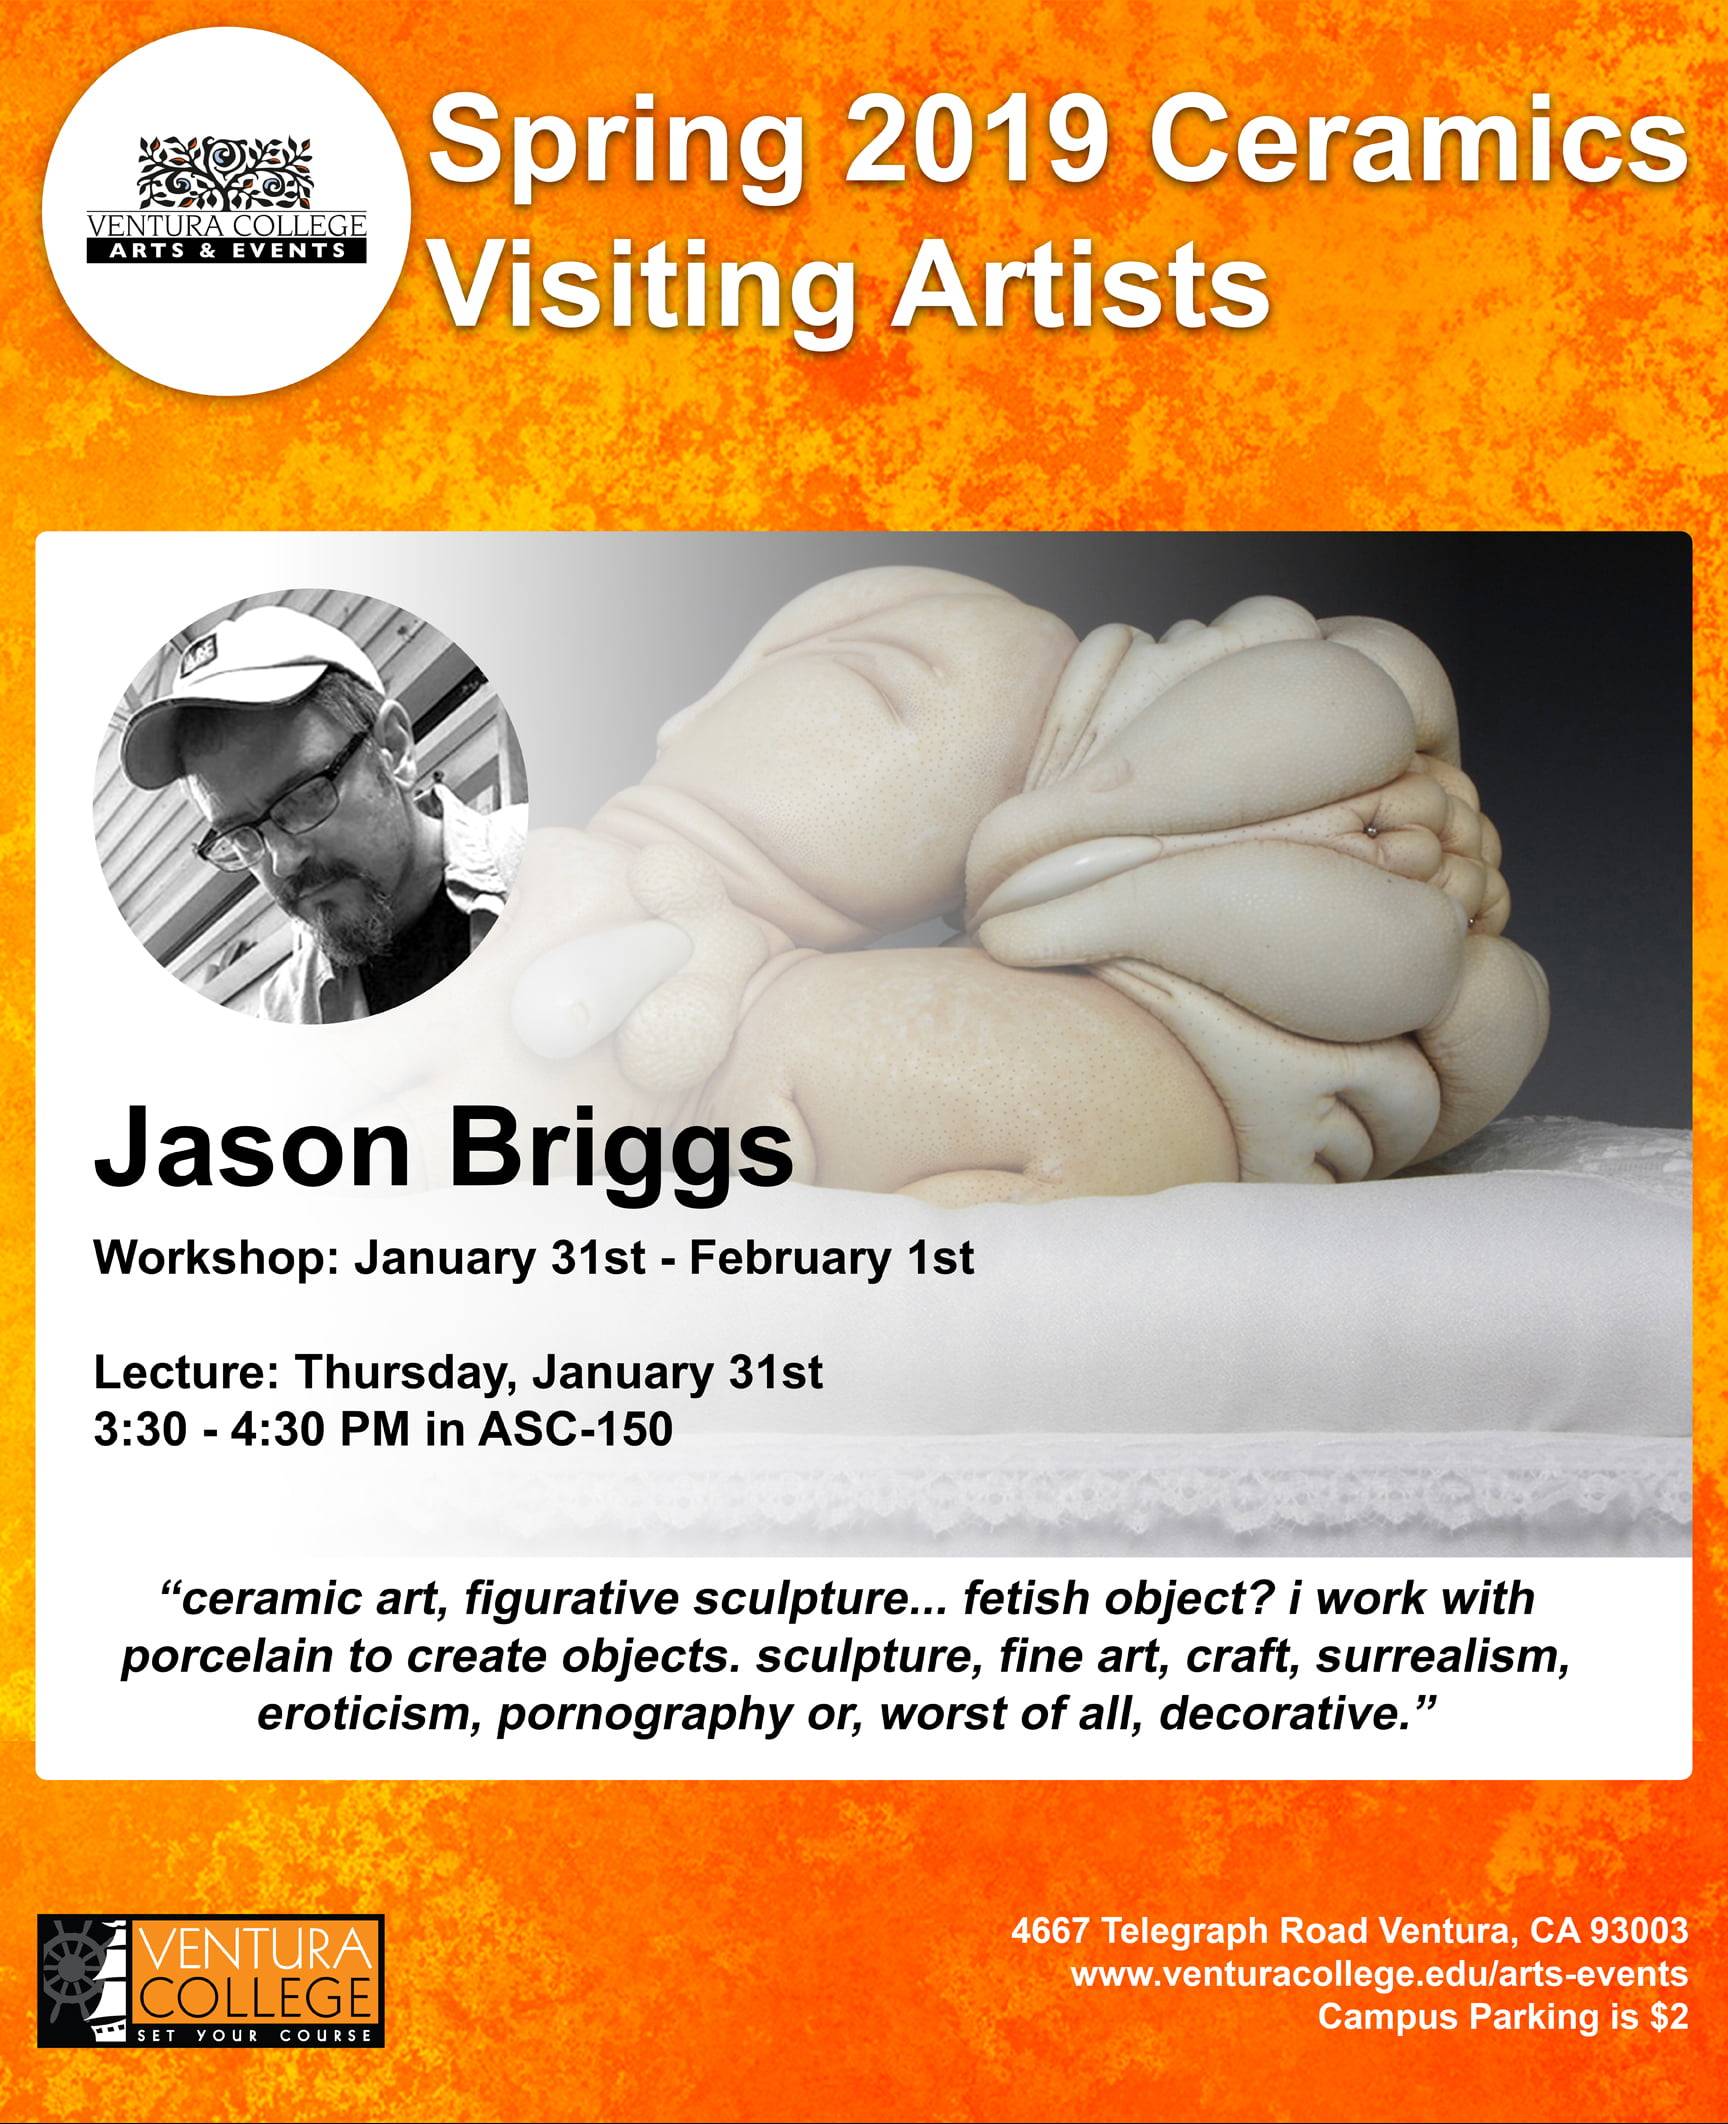 Jason Briggs ceramics workshop visiting artist Ventura College